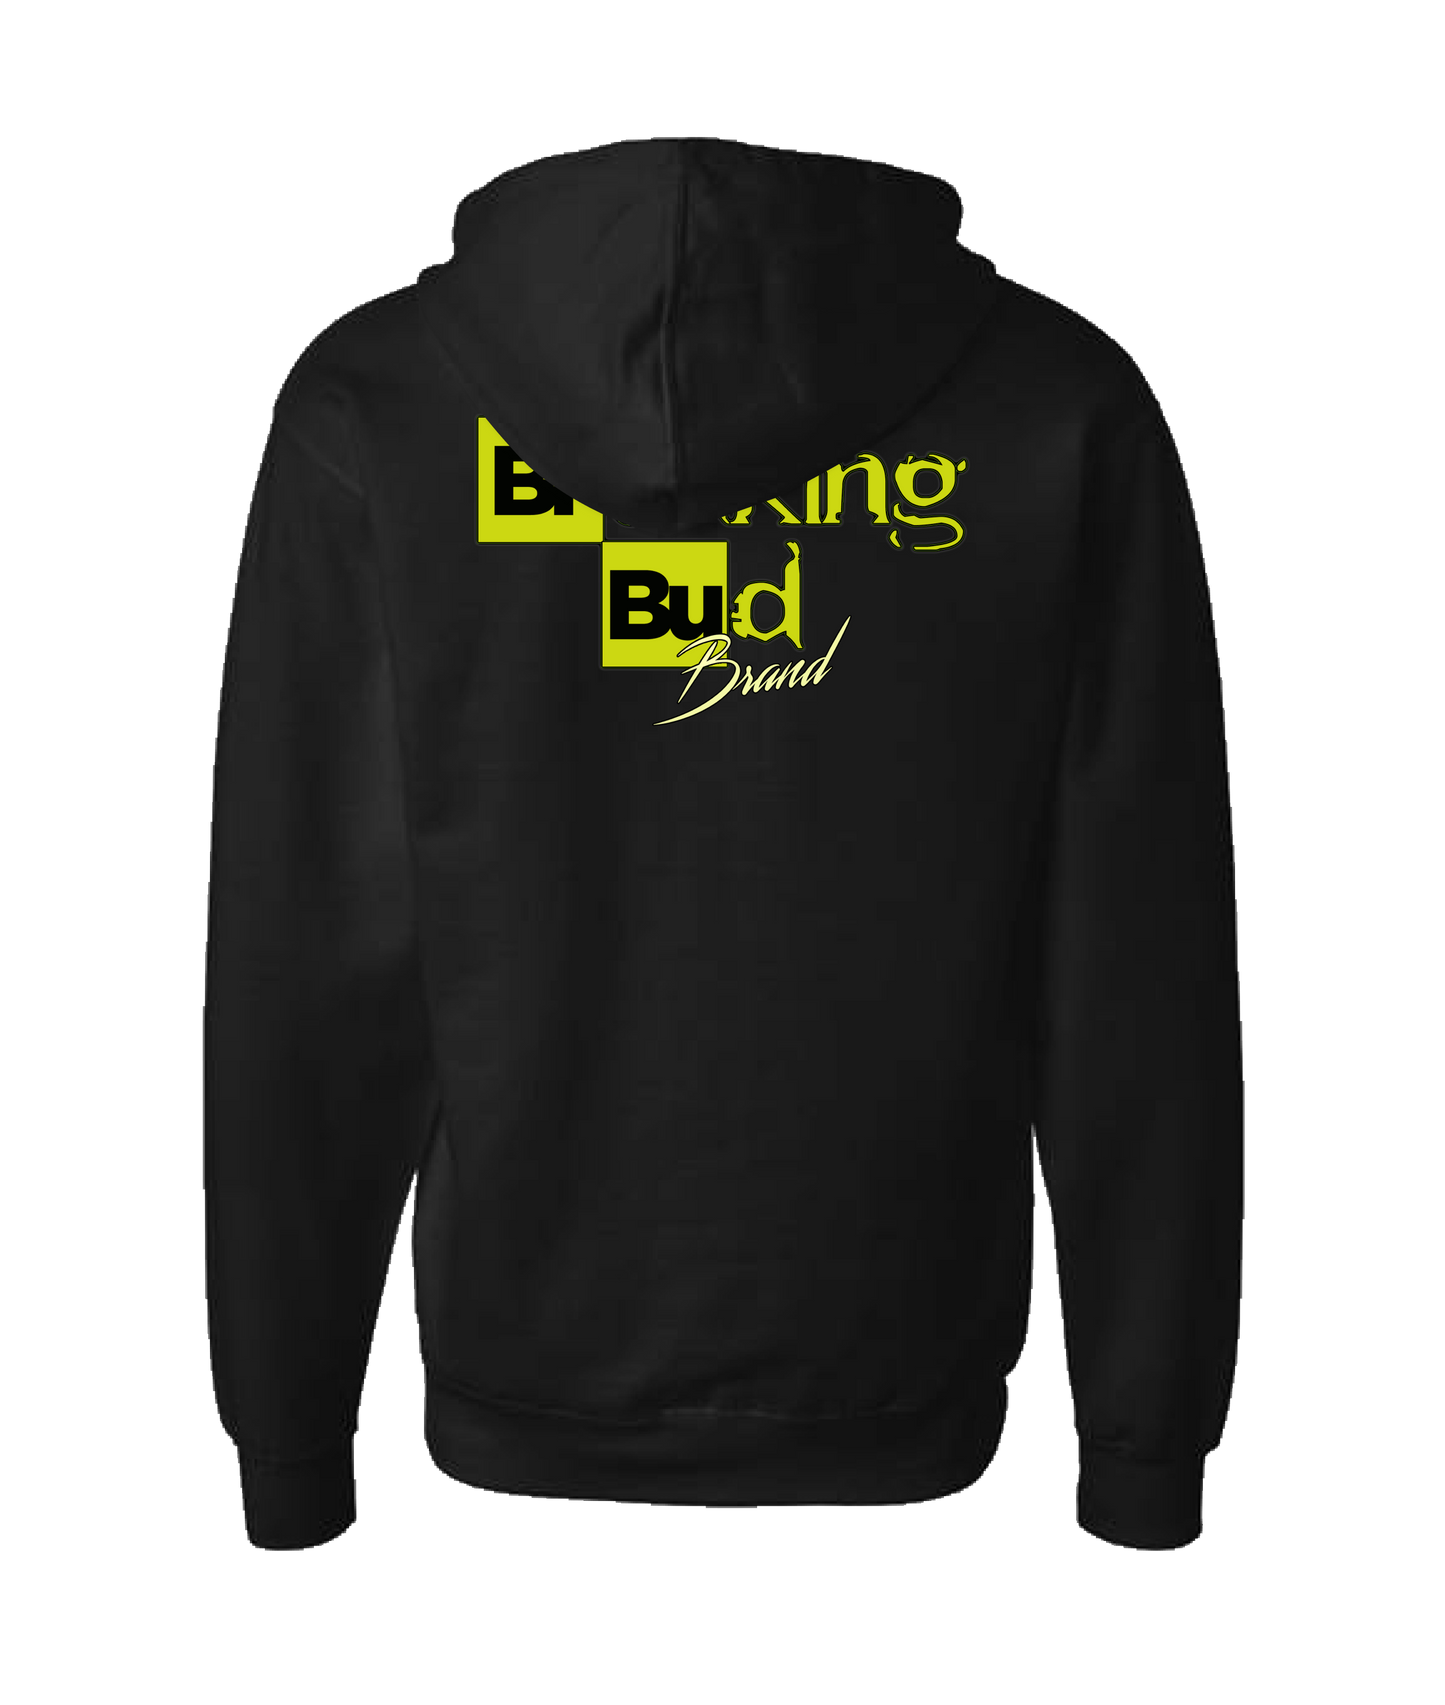 The Breakin Bud Brand - Winter season - Black Zip Up Hoodie